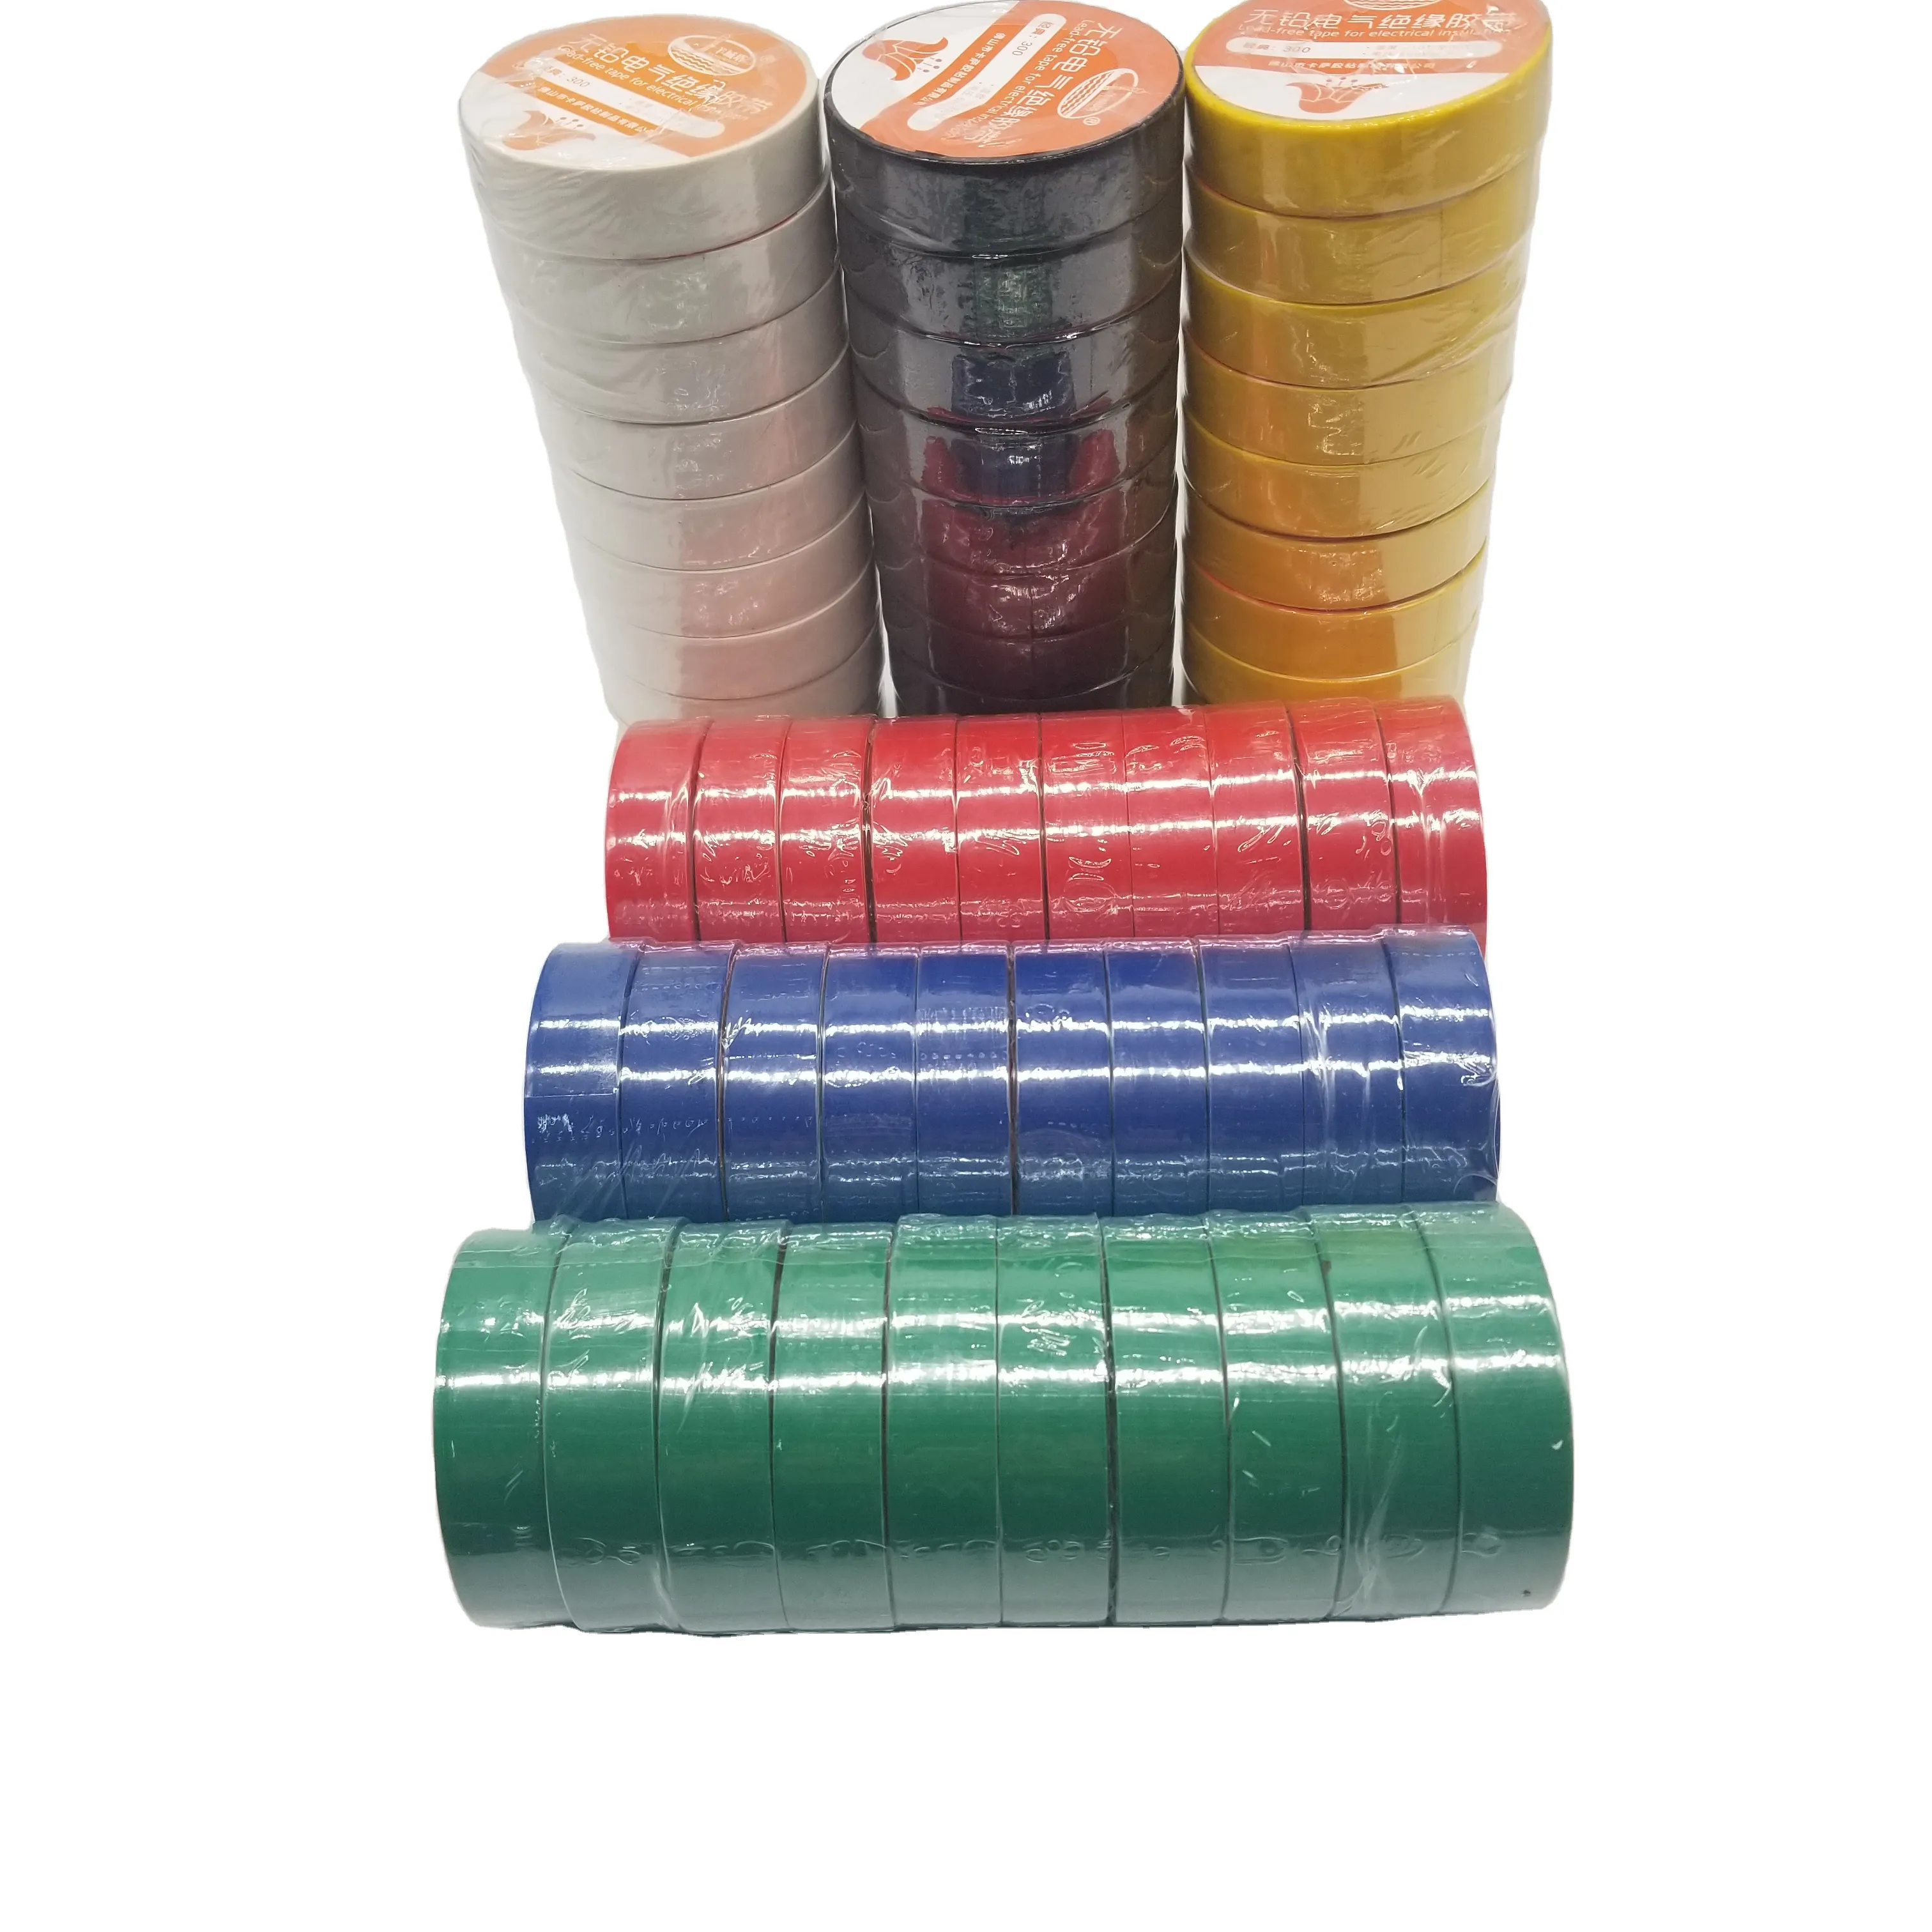 PVC絶縁電気テープすべてのワイヤーおよびケーブルスプライス用の電気絶縁テープ